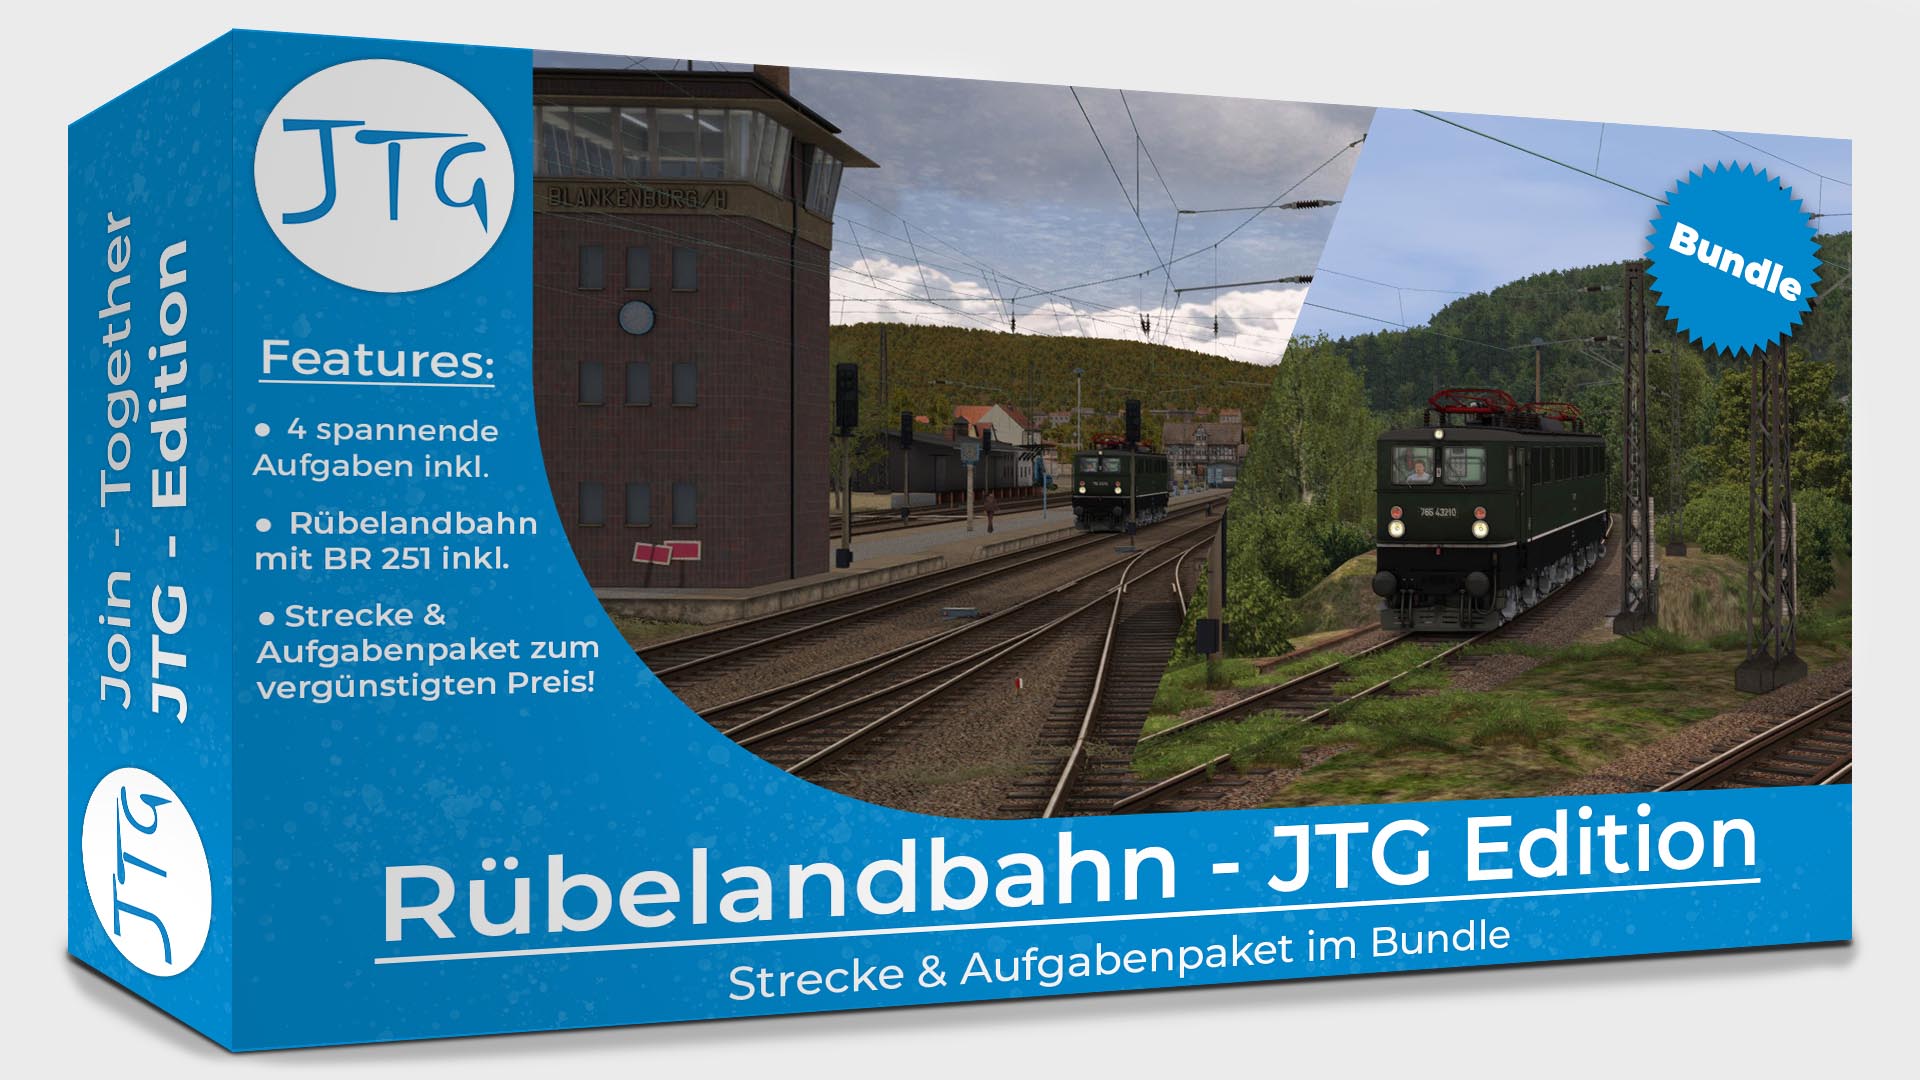 Rübelandbahn - JTG Edition